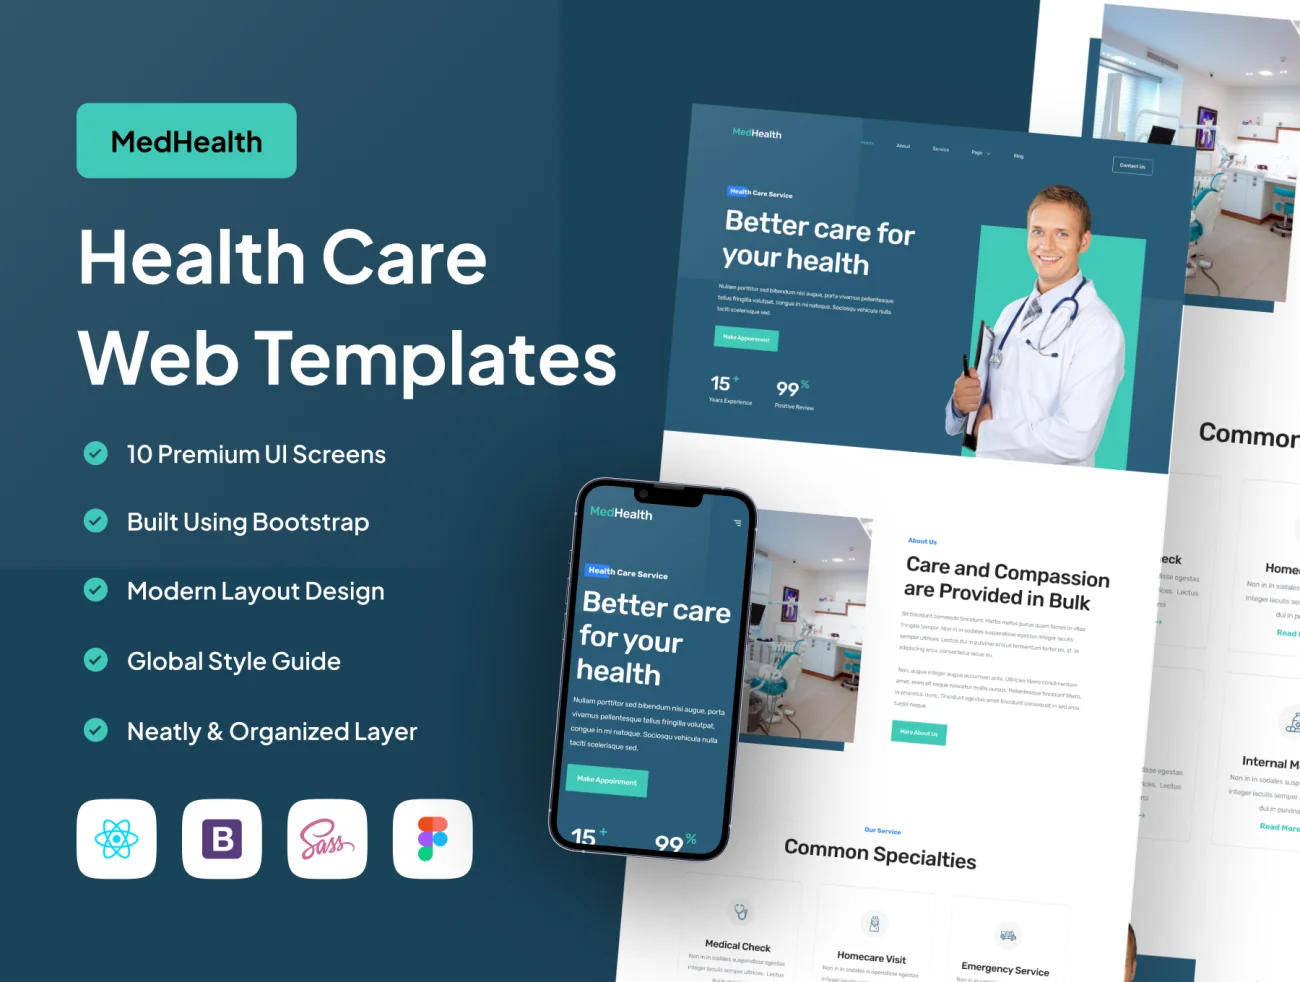 现代简约风格医疗保健网站设计模板10款 MedHealth - Health Care Web Templates-UI/UX、主页、介绍、源码、网站、预订-到位啦UI